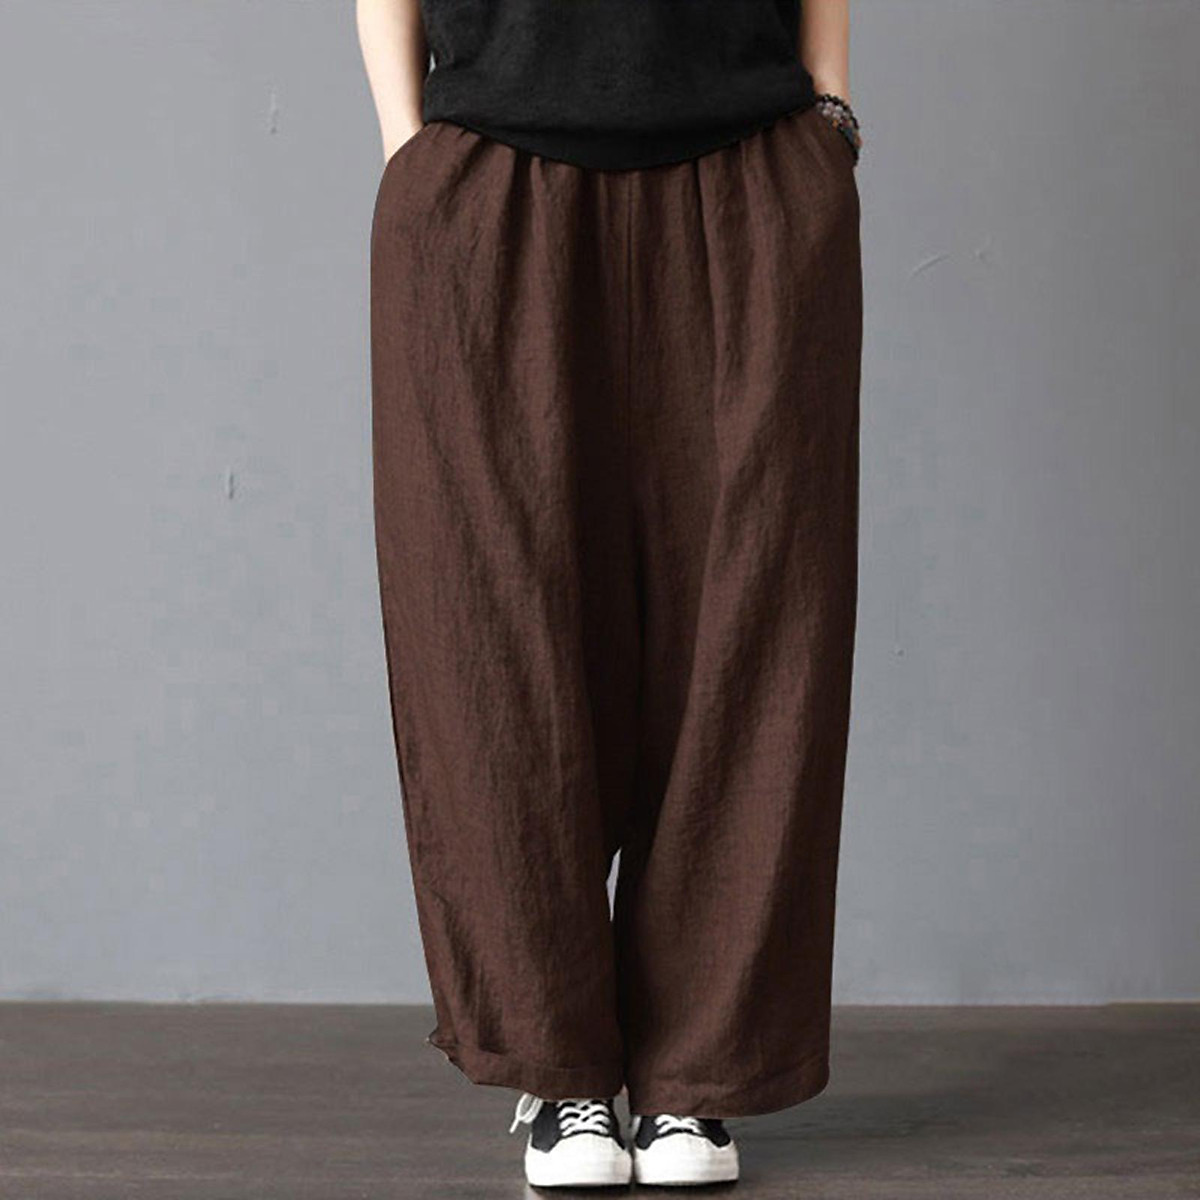 Damart Womens Black Trousers Size 18 L24 in – Preworn Ltd